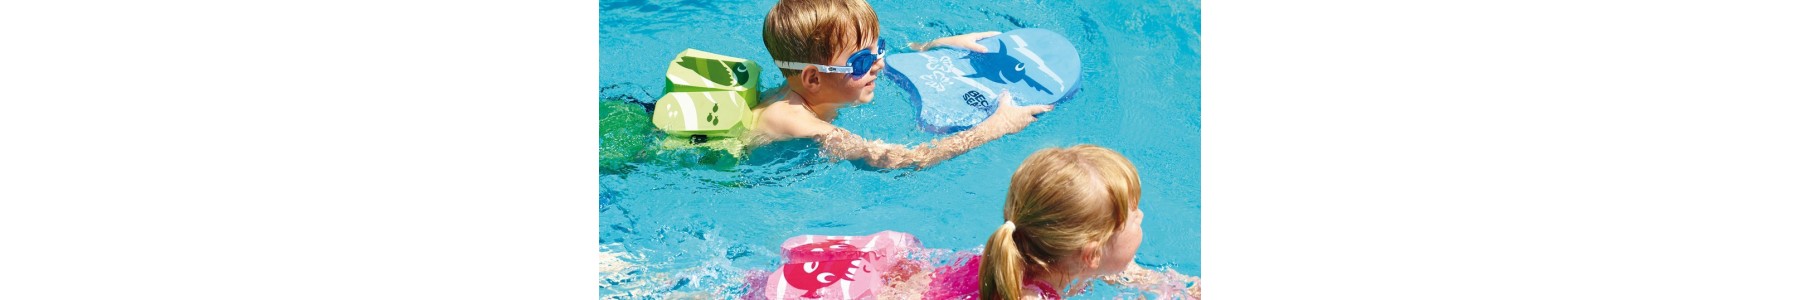 Zwemmen voor gehandicapte kinderen Nuttig voor spel en therapie